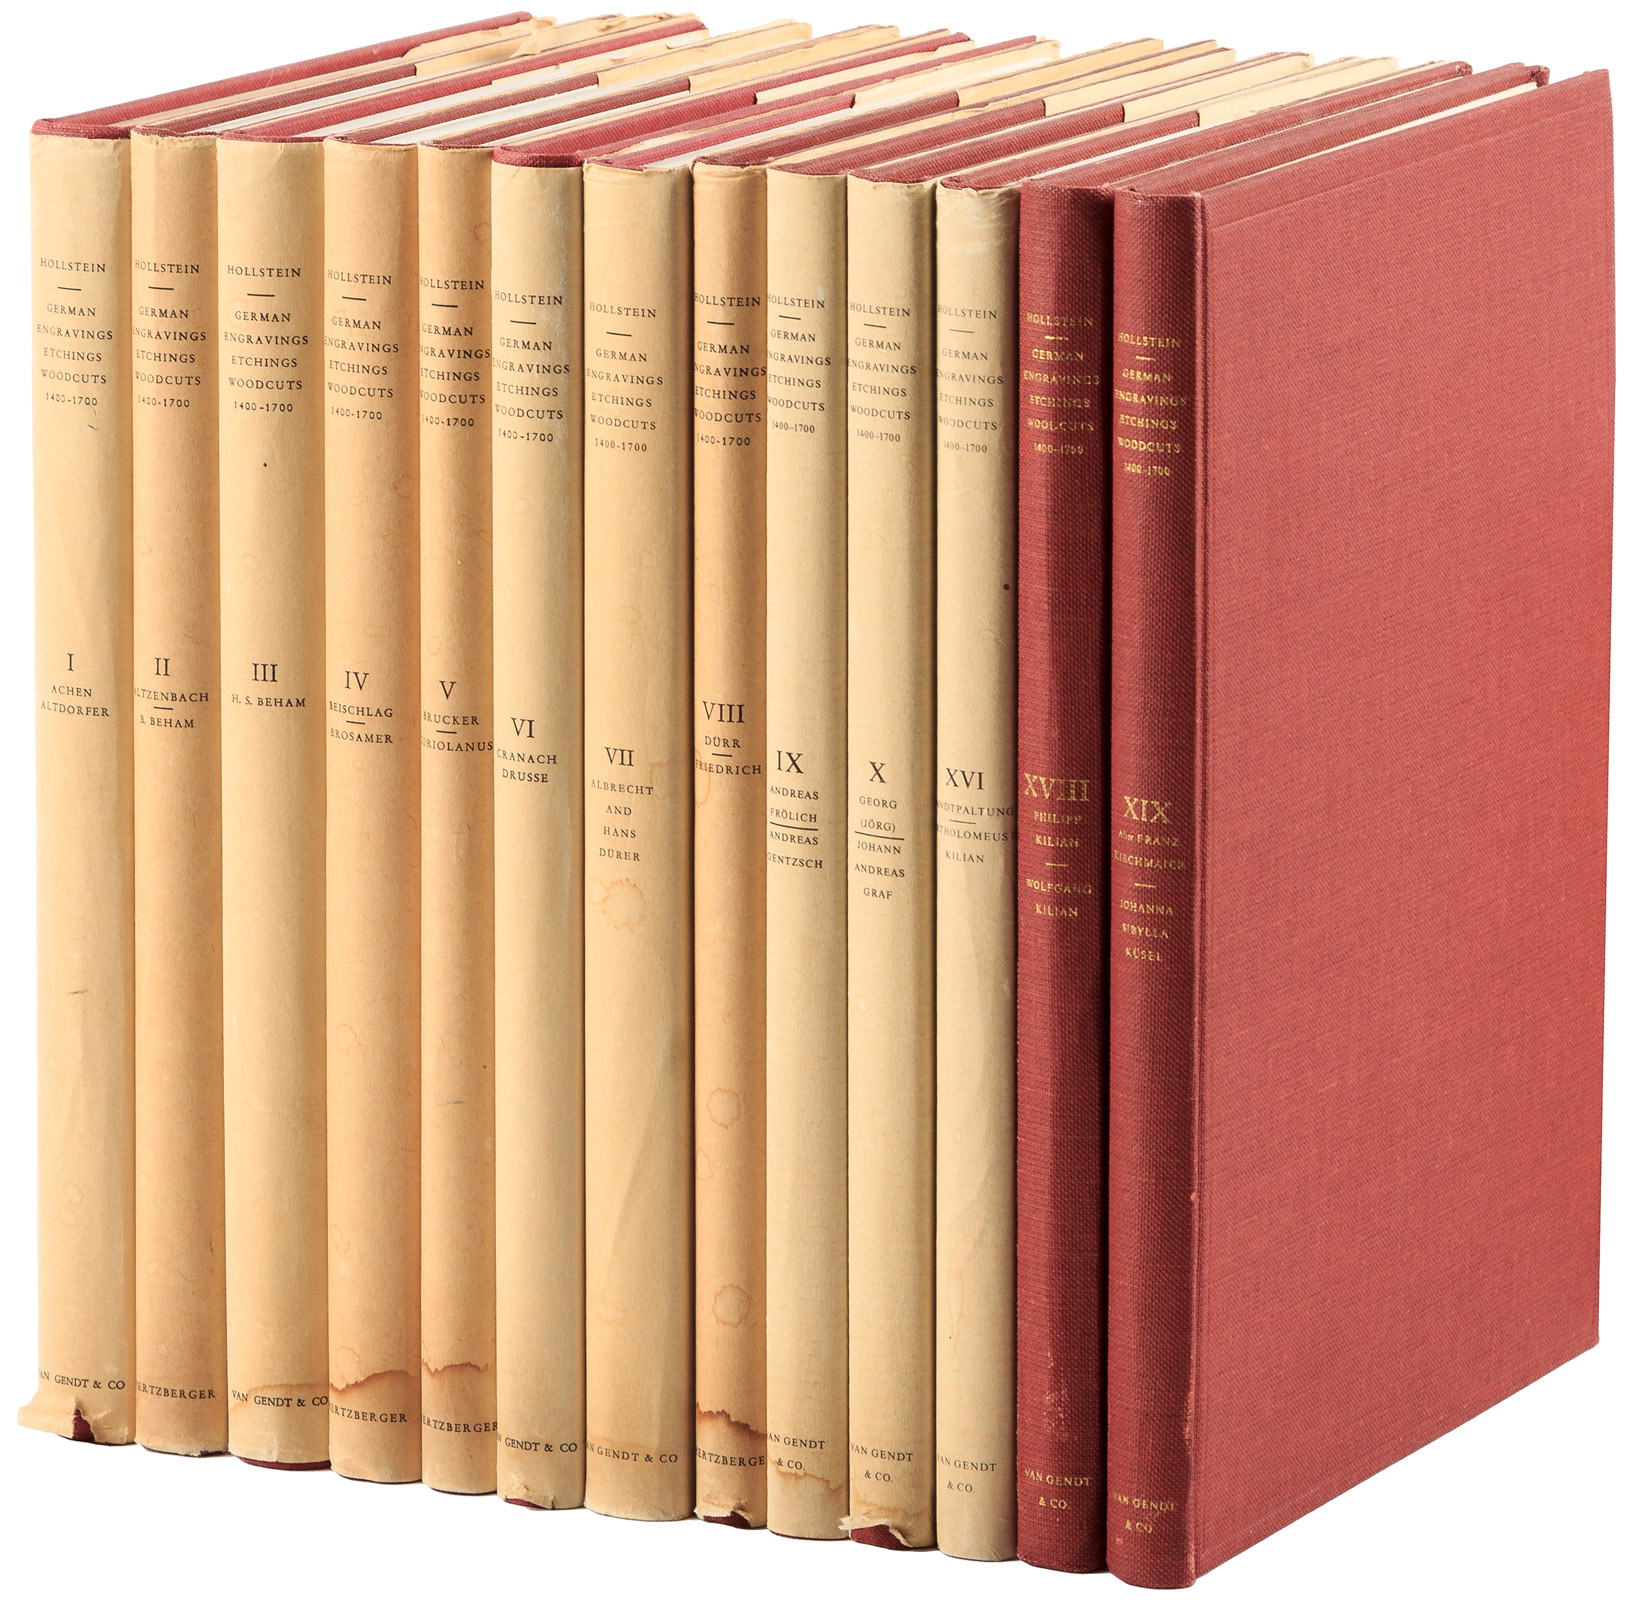 Hollstein's German Engravings, 13 volumes